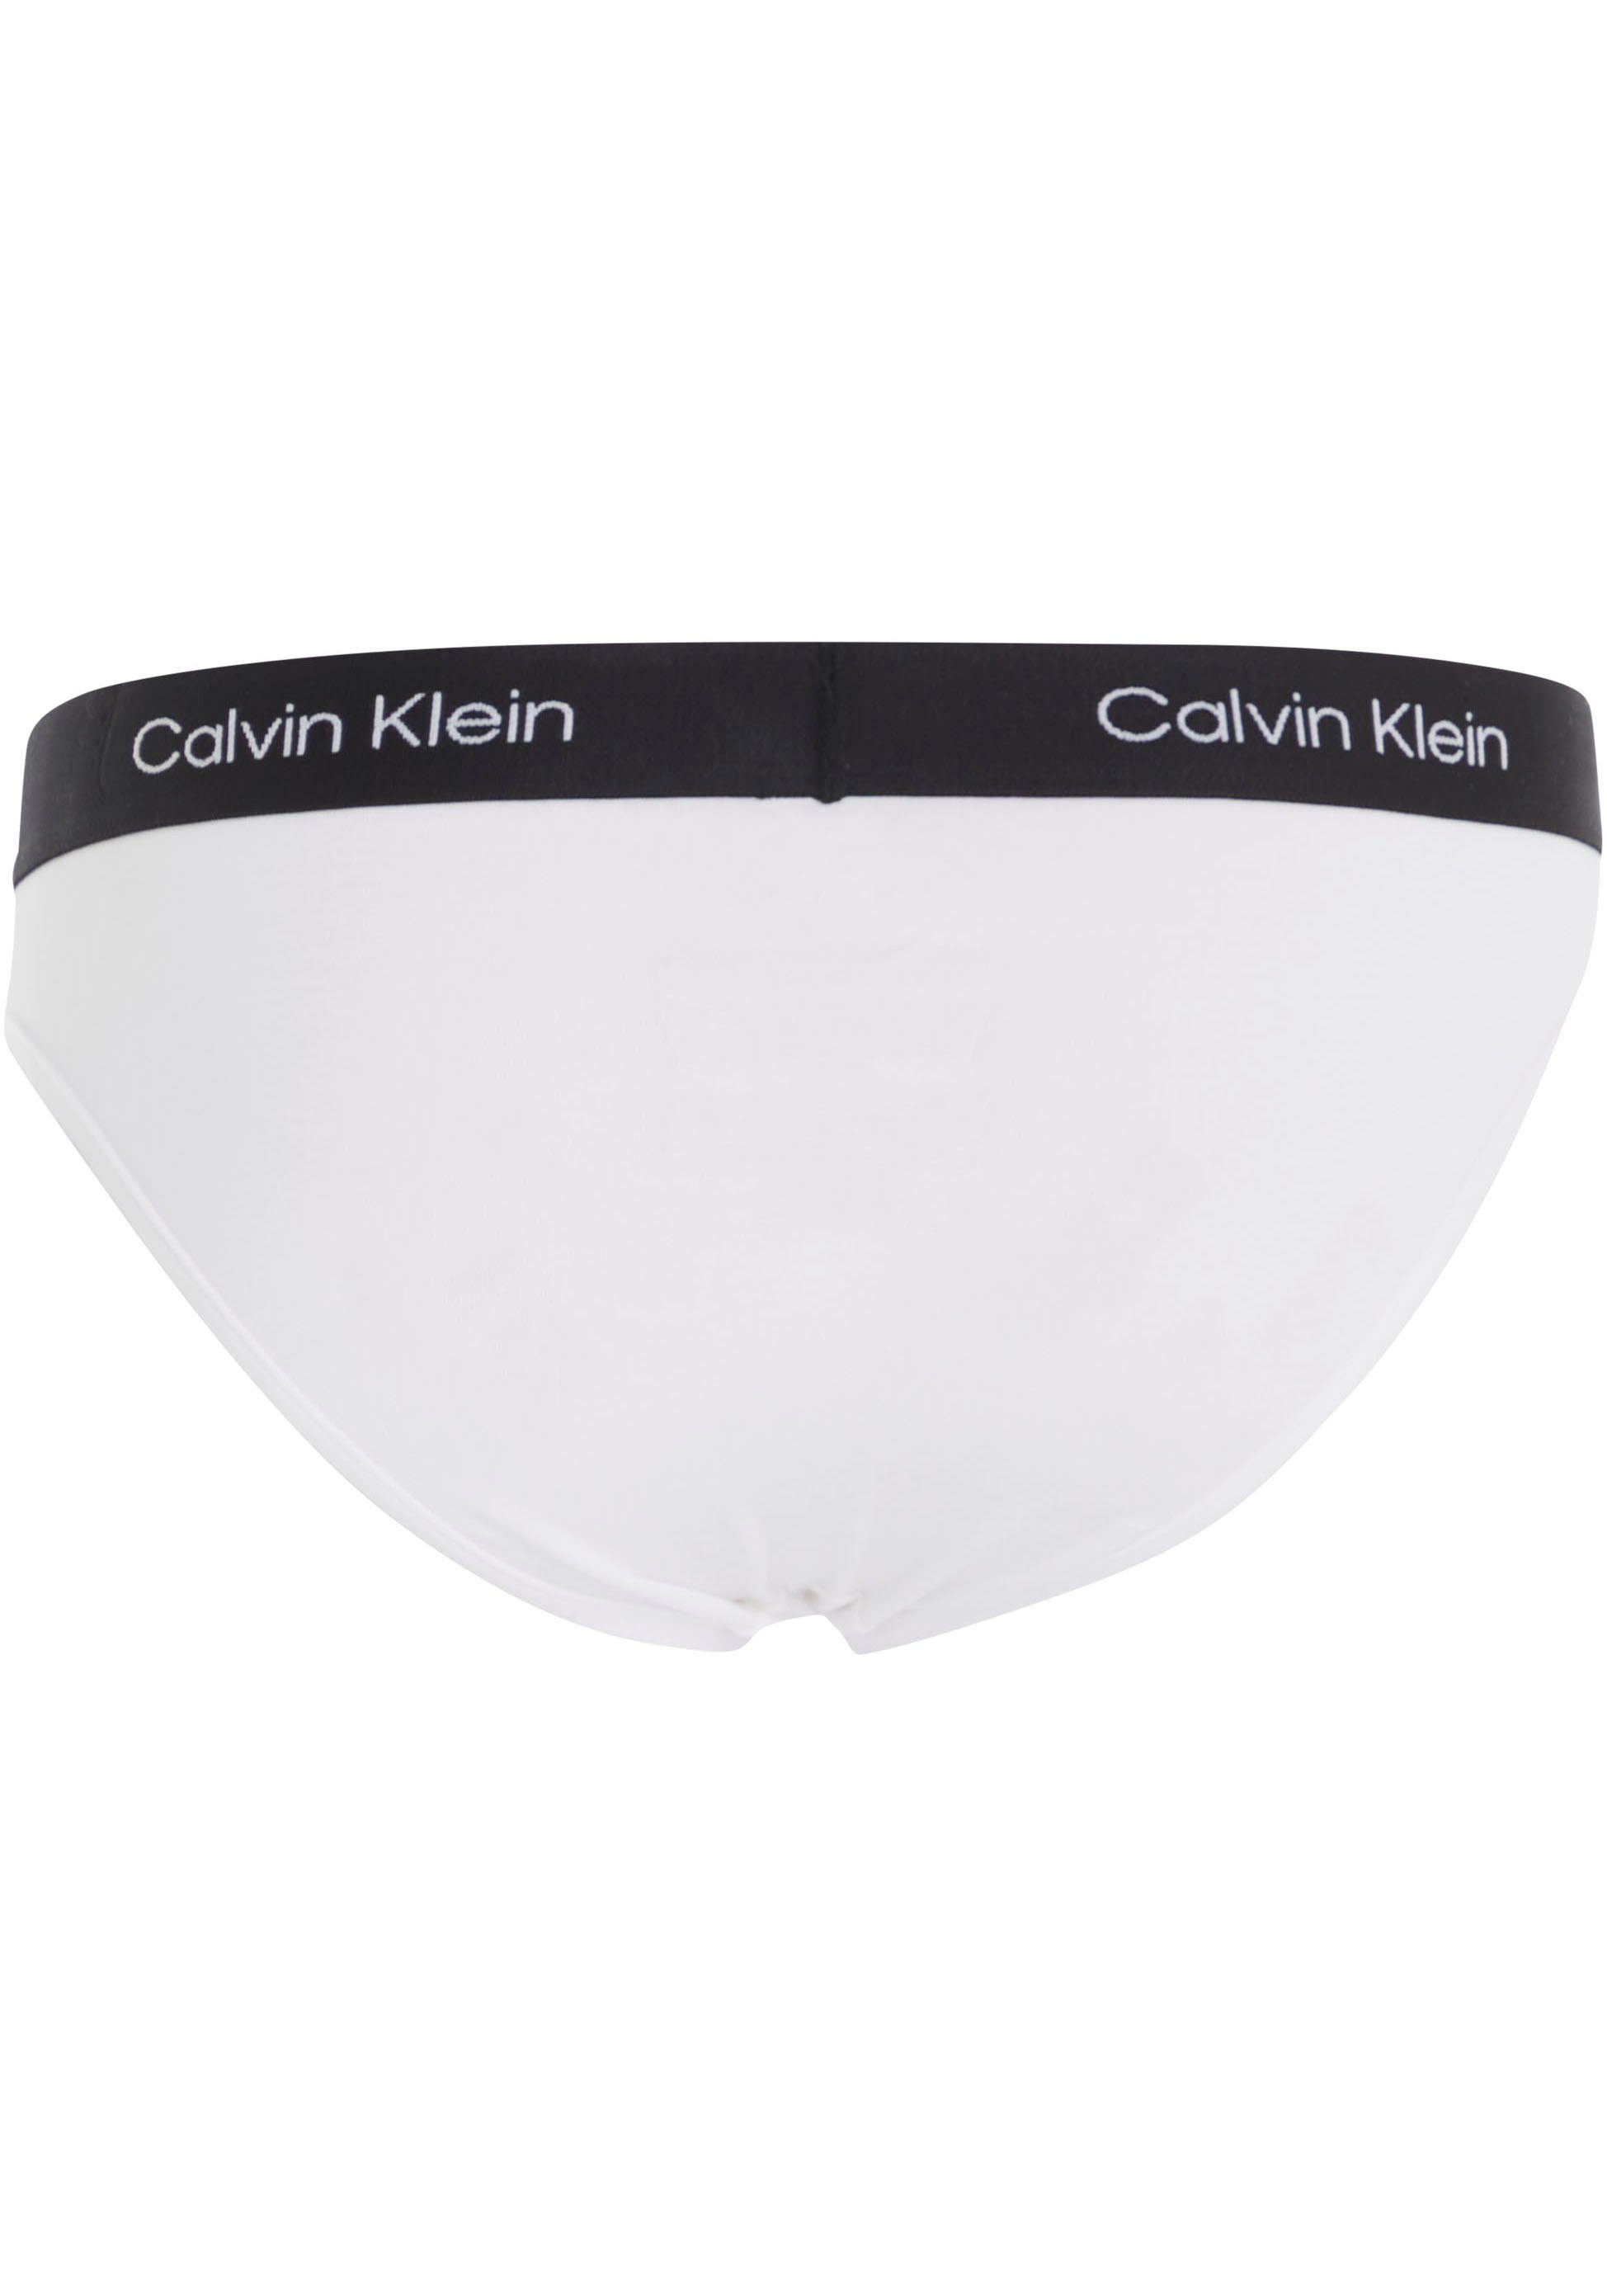 Calvin Klein Underwear Bikinislip mit Allover-Muster weiß